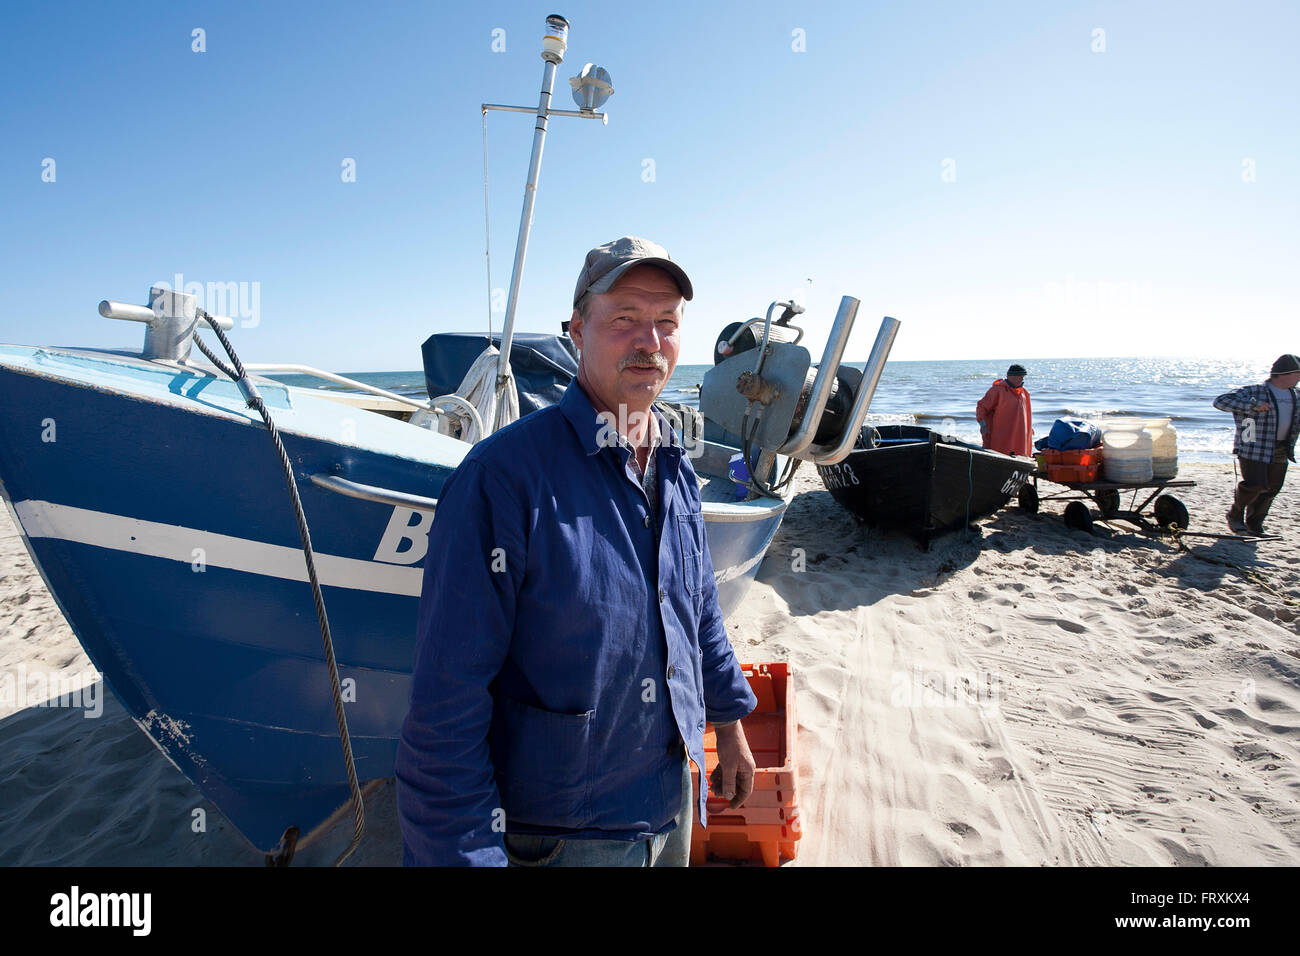 Fisherman Charles Heuer di vendita del pesce sulla spiaggia, Baabe, Ruegen, Mar Baltico, Meclenburgo-Pomerania Occidentale, Germania Foto Stock